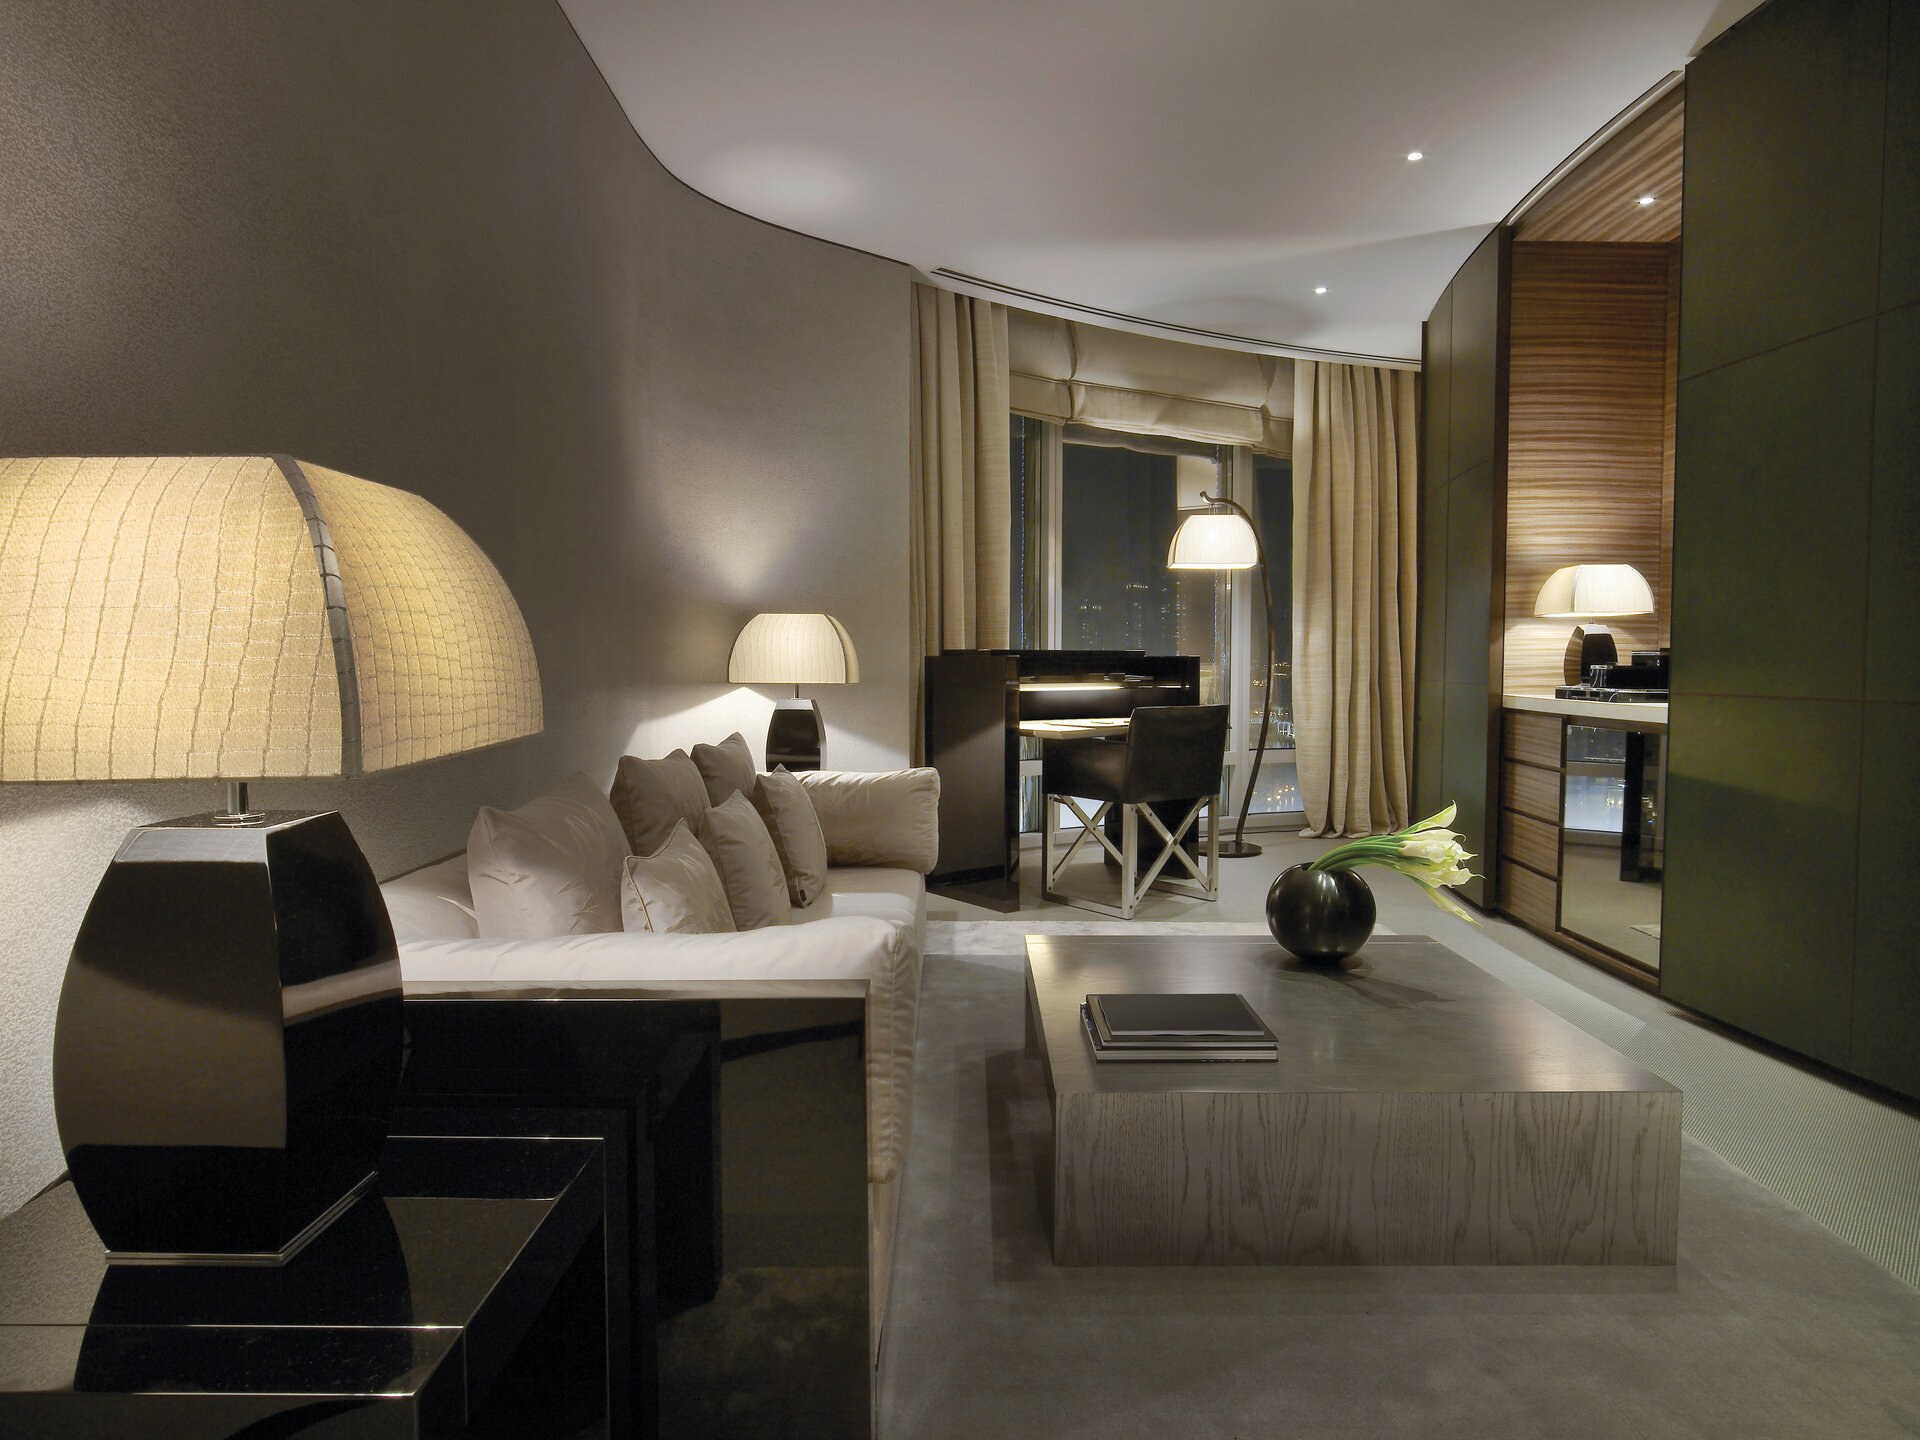 Гостиница в жилом помещении. Armani Hotel Dubai номера. Отель Армани в Бурдж Халифа. Отель Армани в Дубае. Гостиница Армани в Бурдж Халифа.